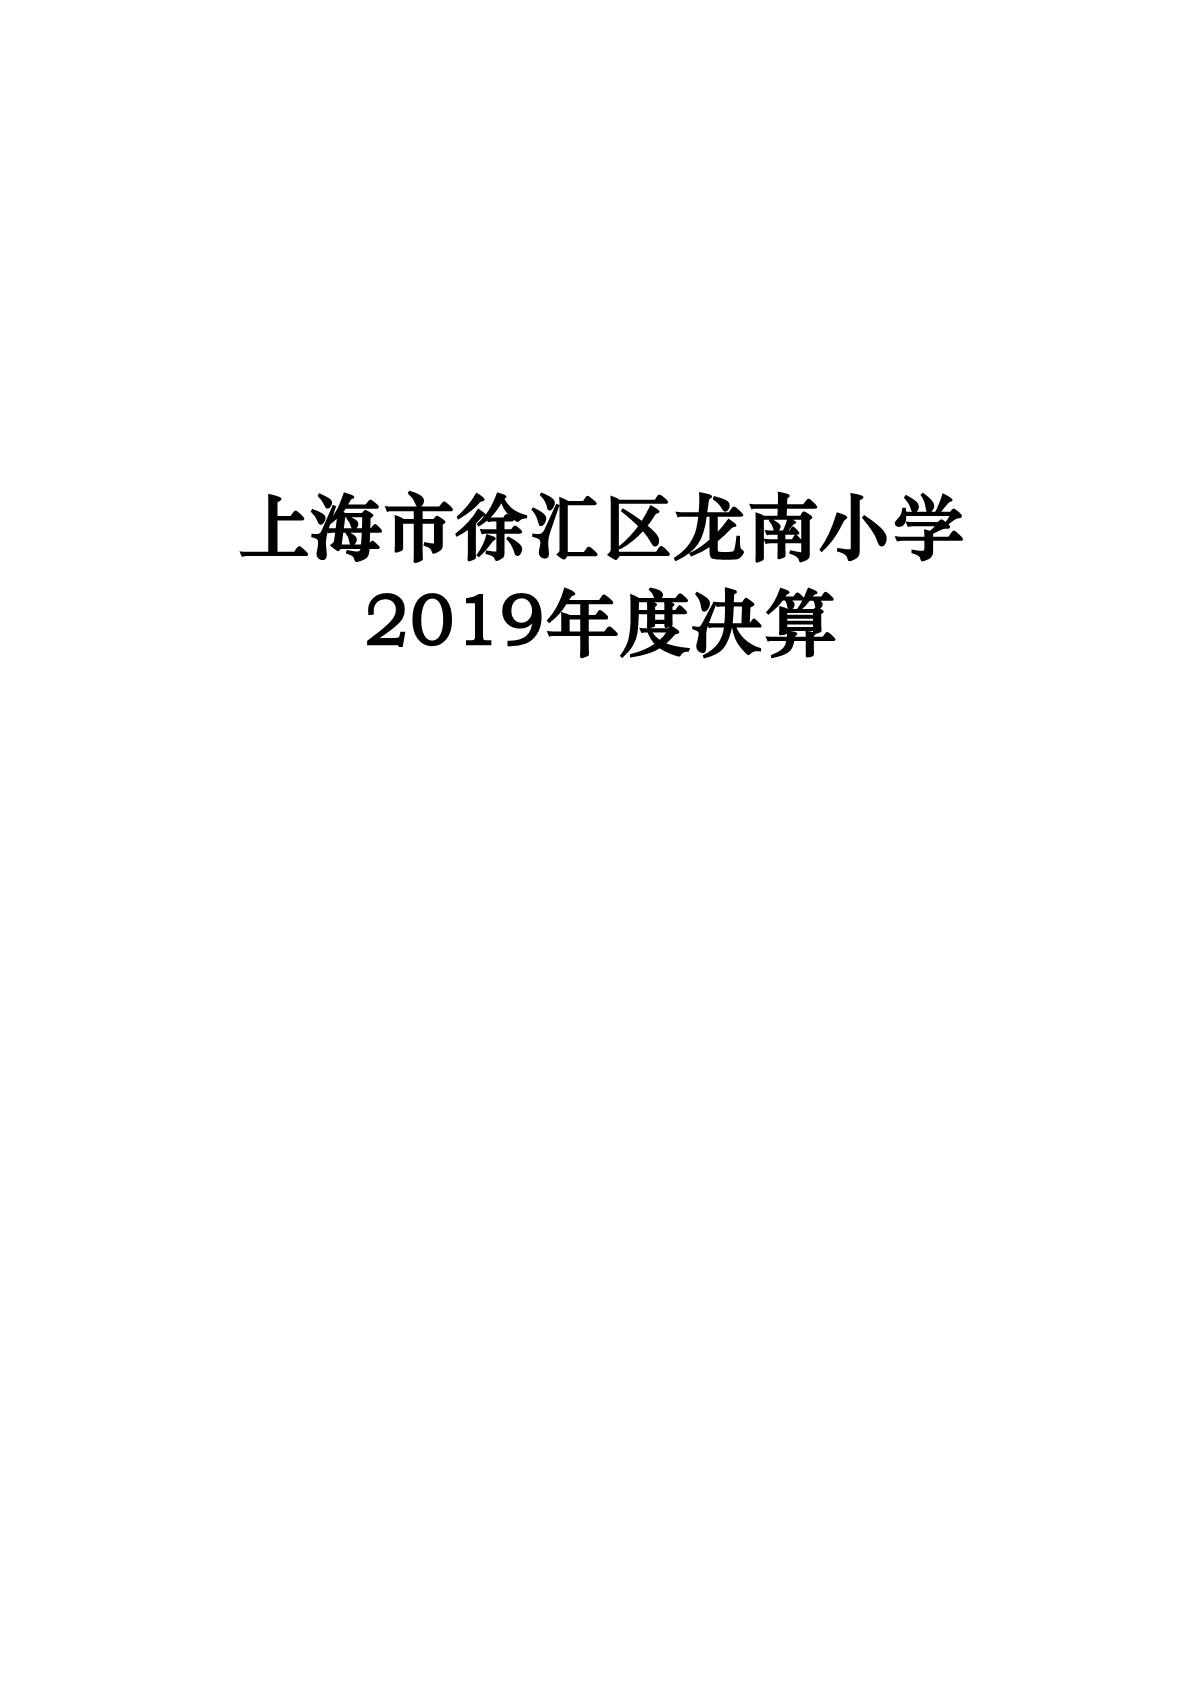 上海市徐汇区龙南小学2019年度决算_1.JPG